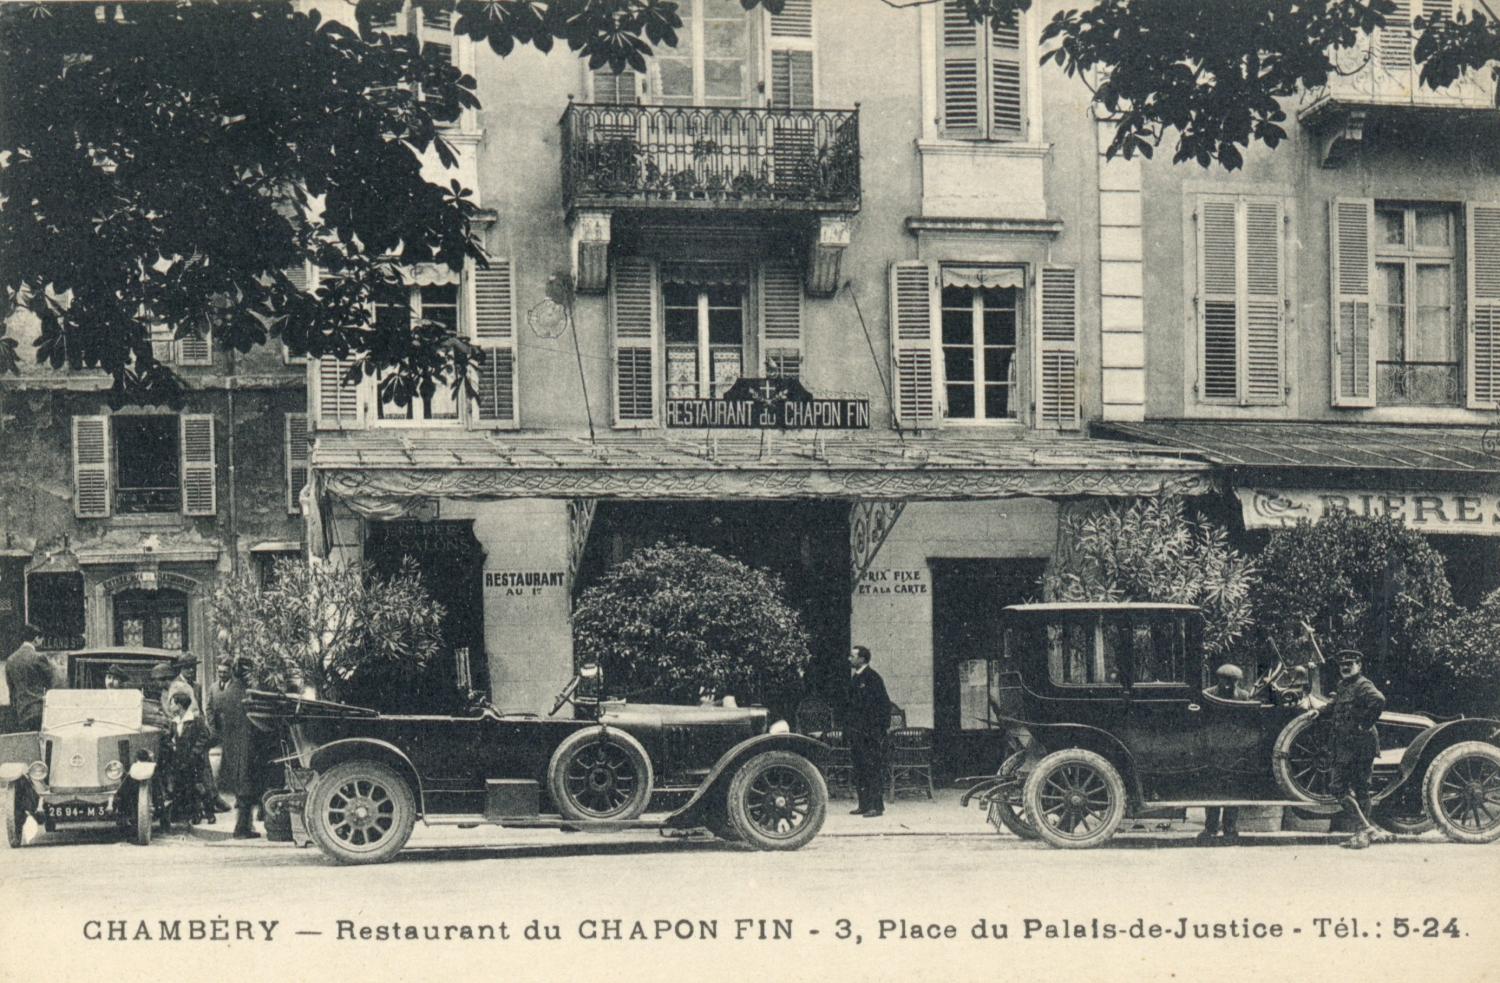 Chambéry. - Restaurant du Chapon fin